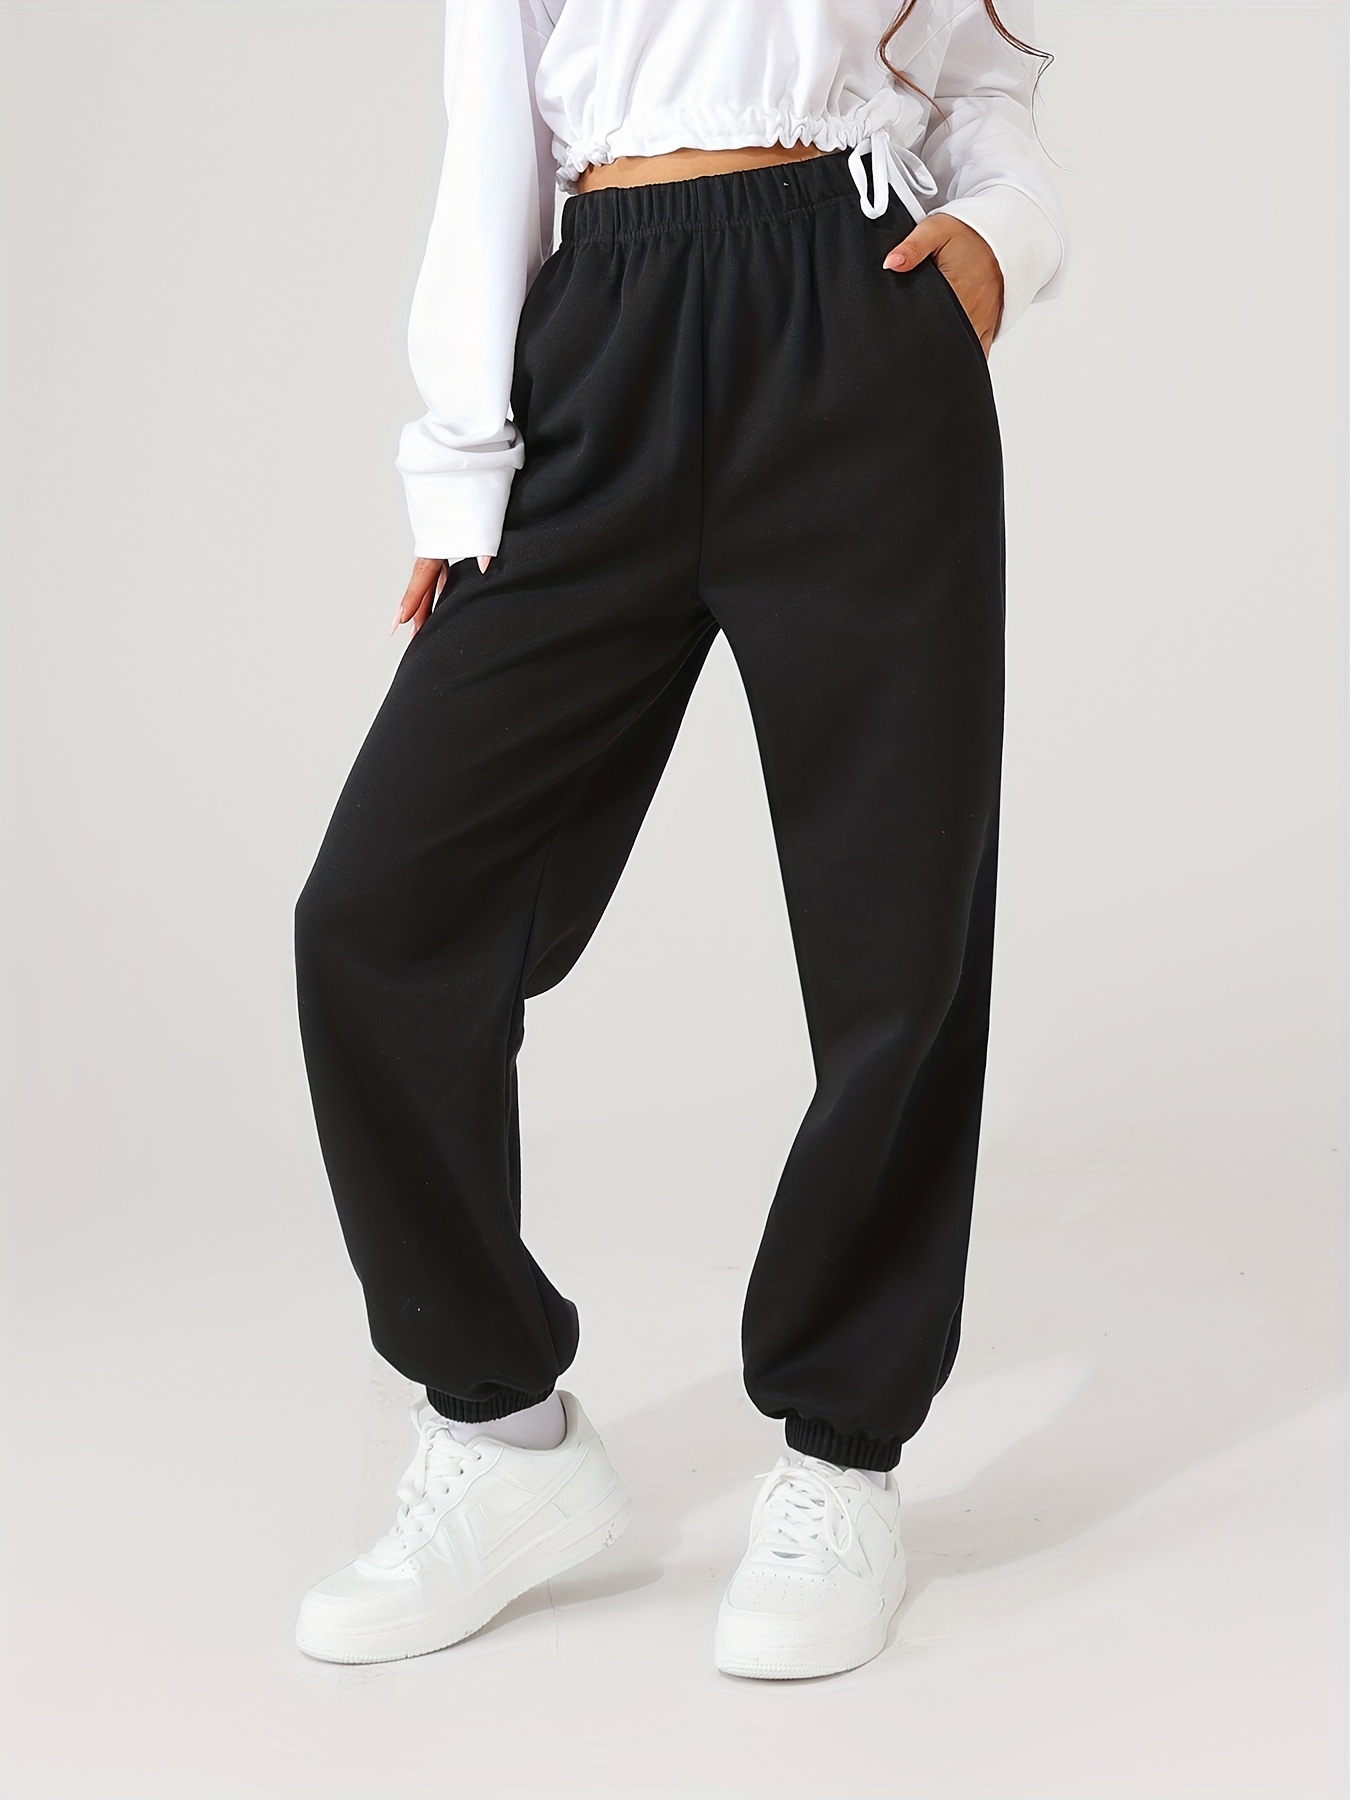 Pantalon de survêtement femme noir confortable pour femme